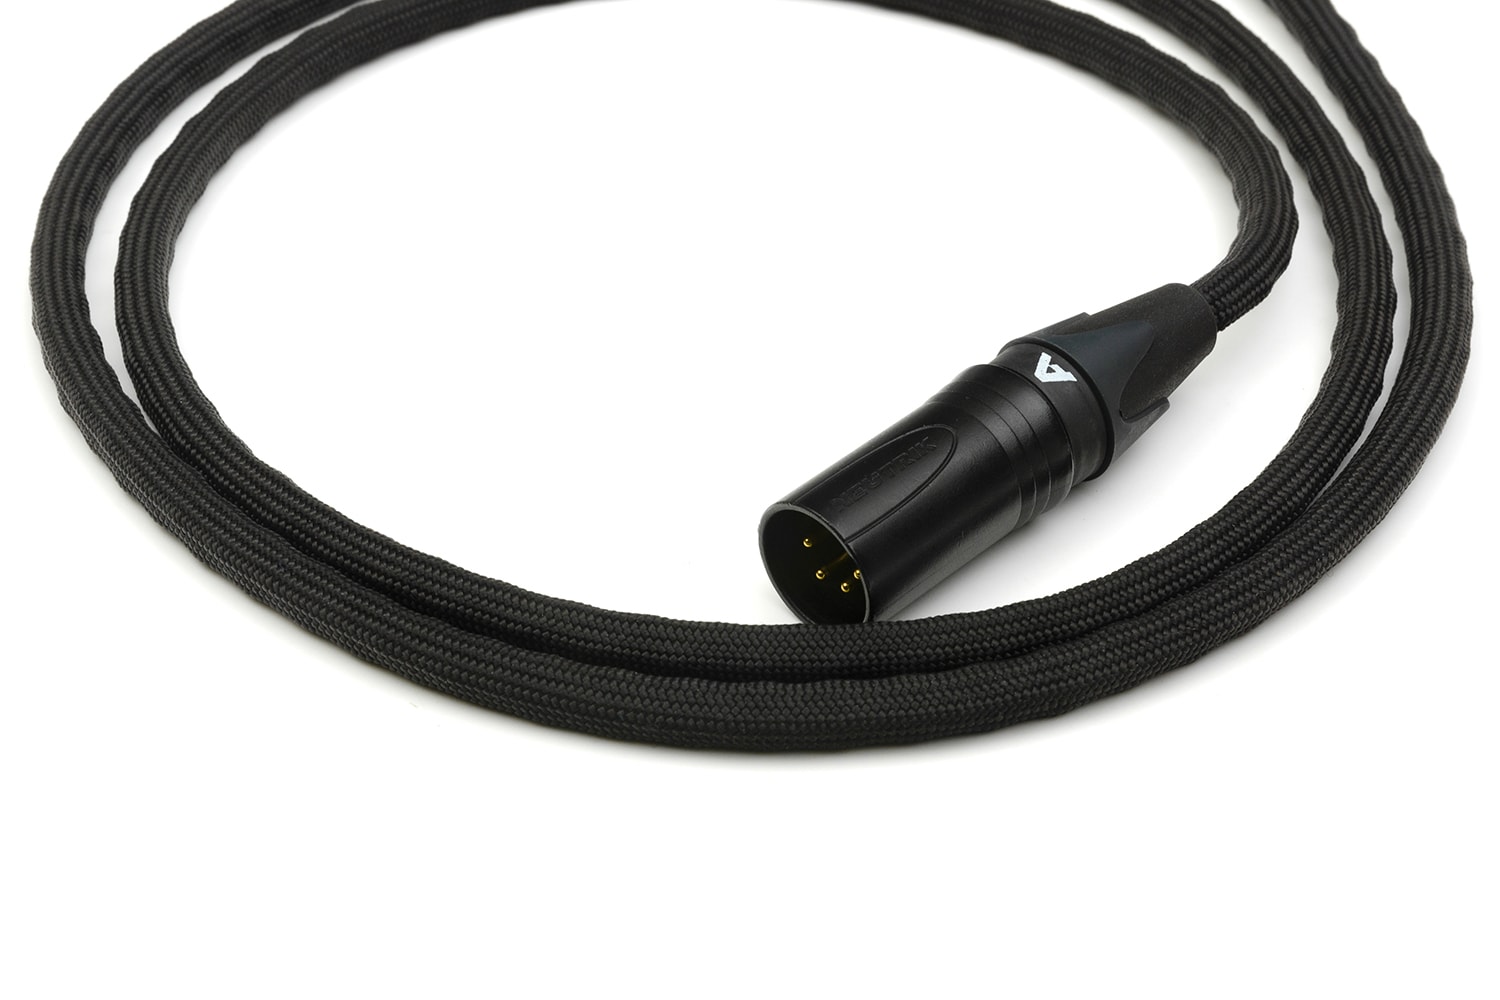 Kabel słuchawkowy zbalansowany AC4 MK2 do Audeze/Kennerton/Meze/ZMF